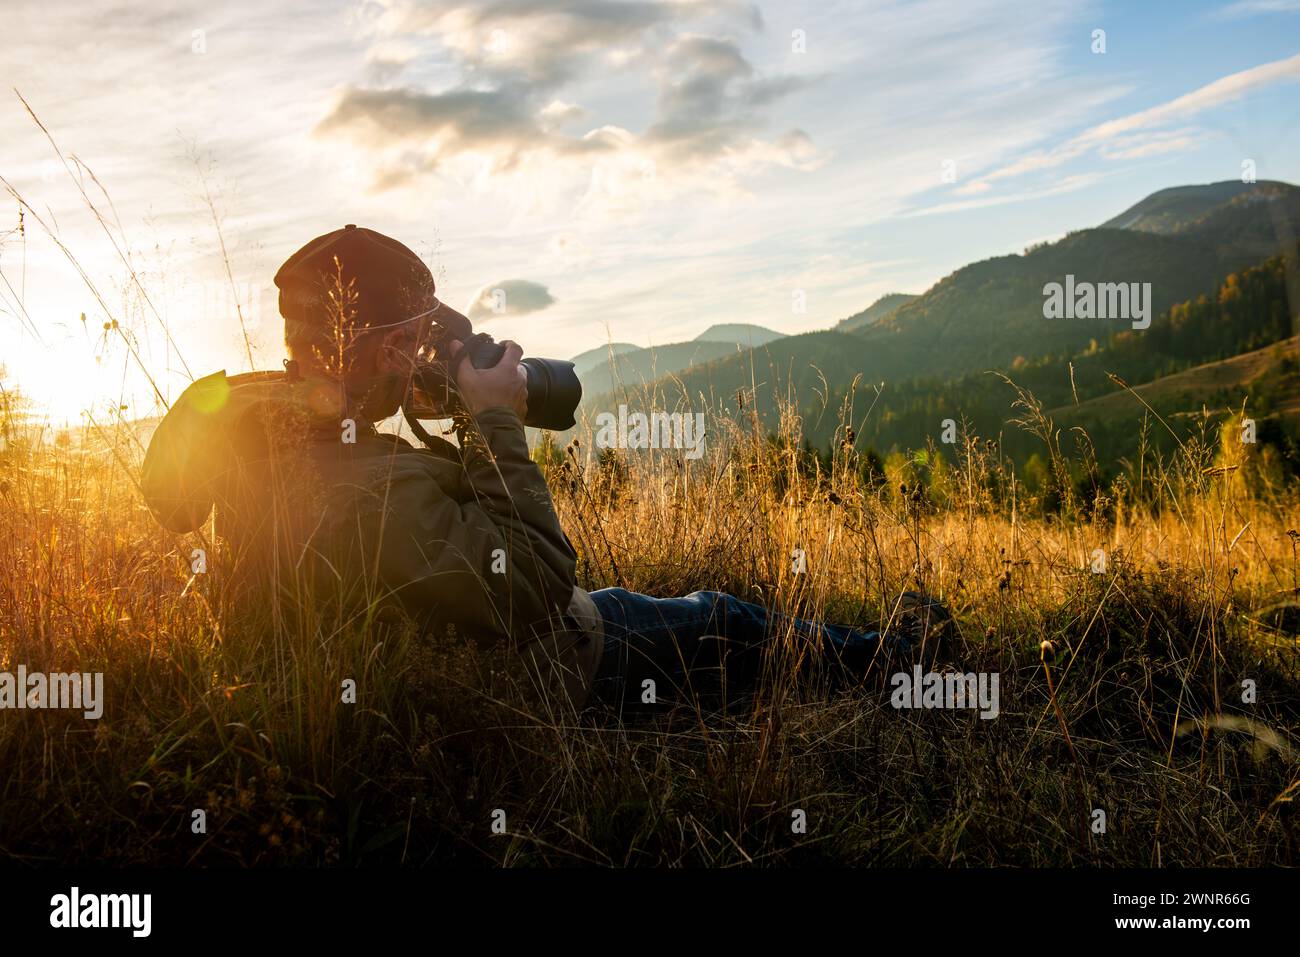 Photographe professionnel de la nature en montagne avec coucher de soleil. Concept de photographie Banque D'Images